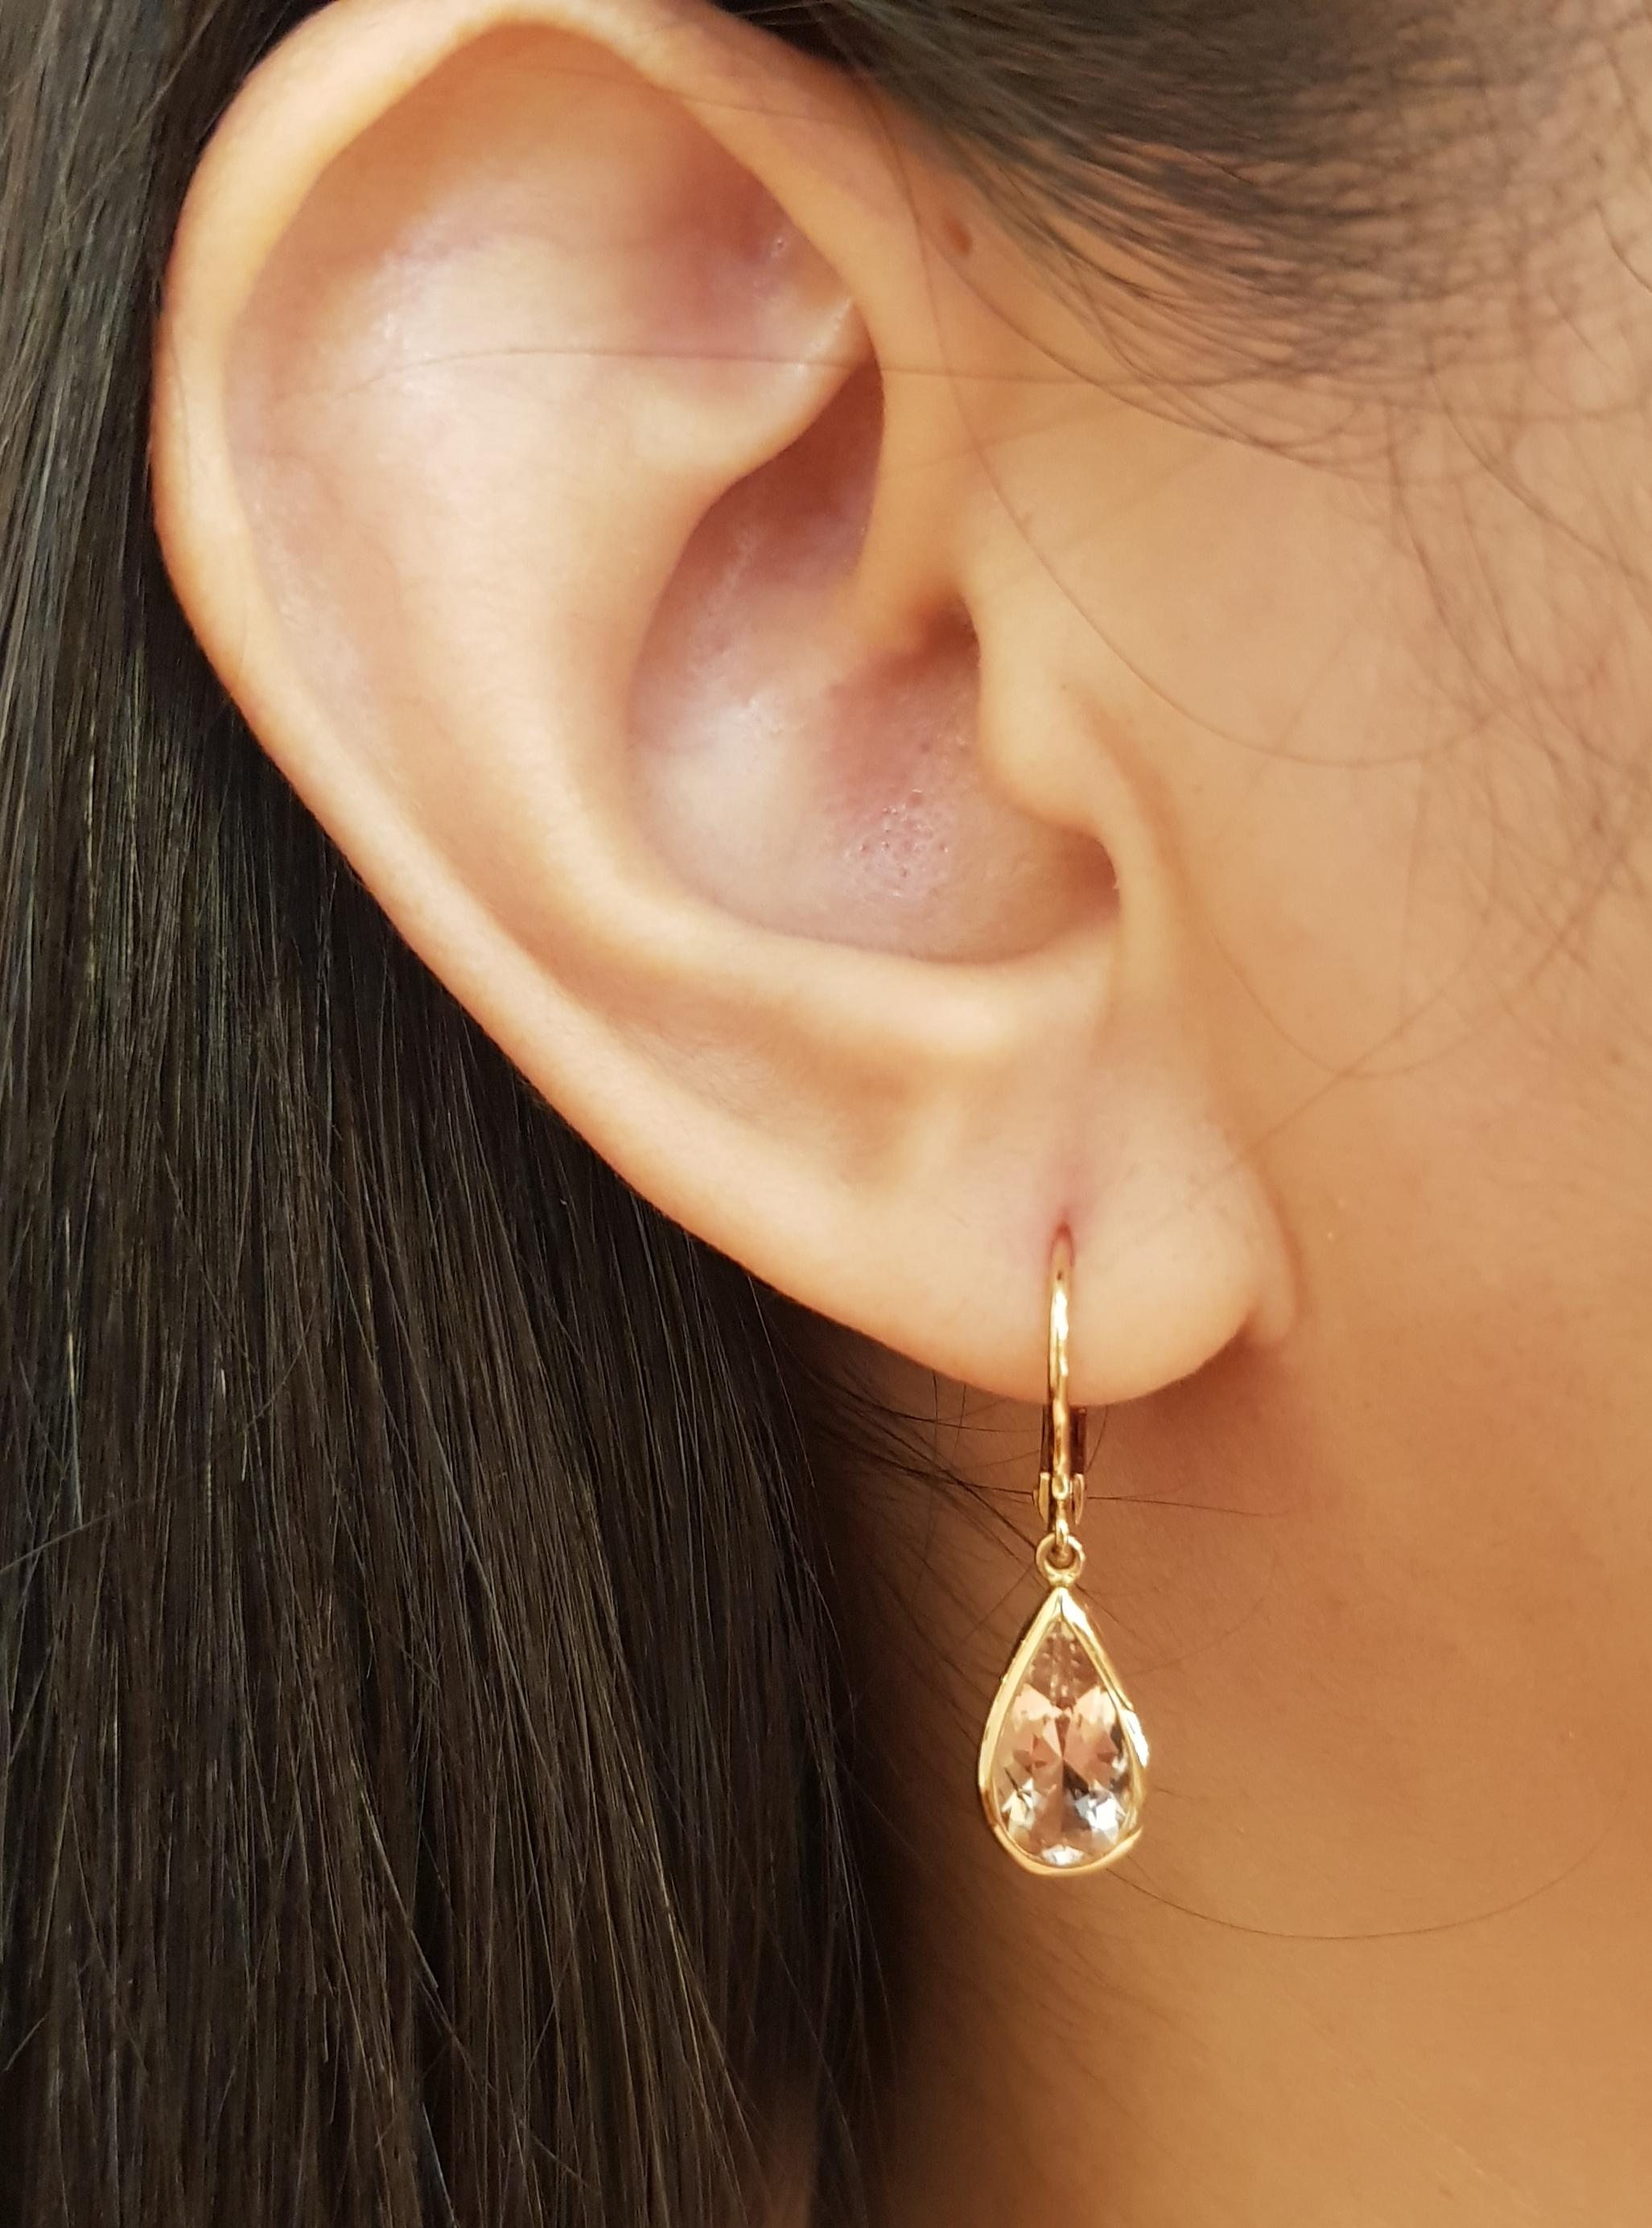 Morganite 3.43 carats Earrings set in 18K Rose Gold Settings

Width: 0.7 cm 
Length: 2.8 cm
Total Weight: 3.61 grams

